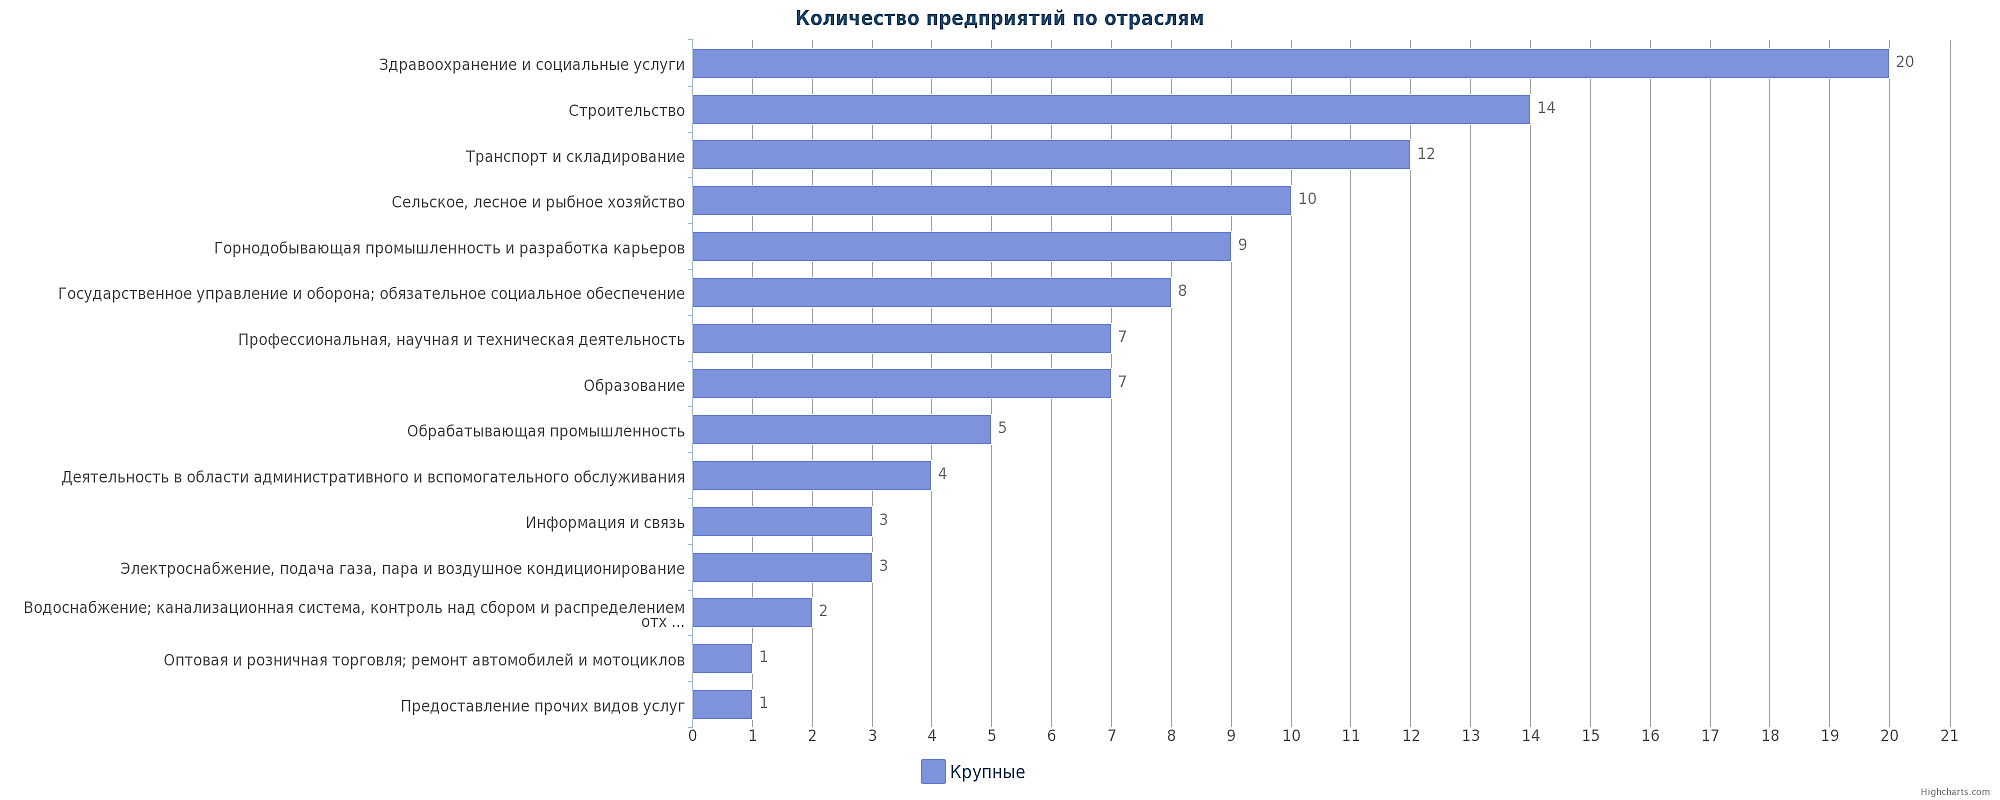 Крупные предприятия Казахстана по отраслям: Кызылорда, Аральск, Айтеке Би